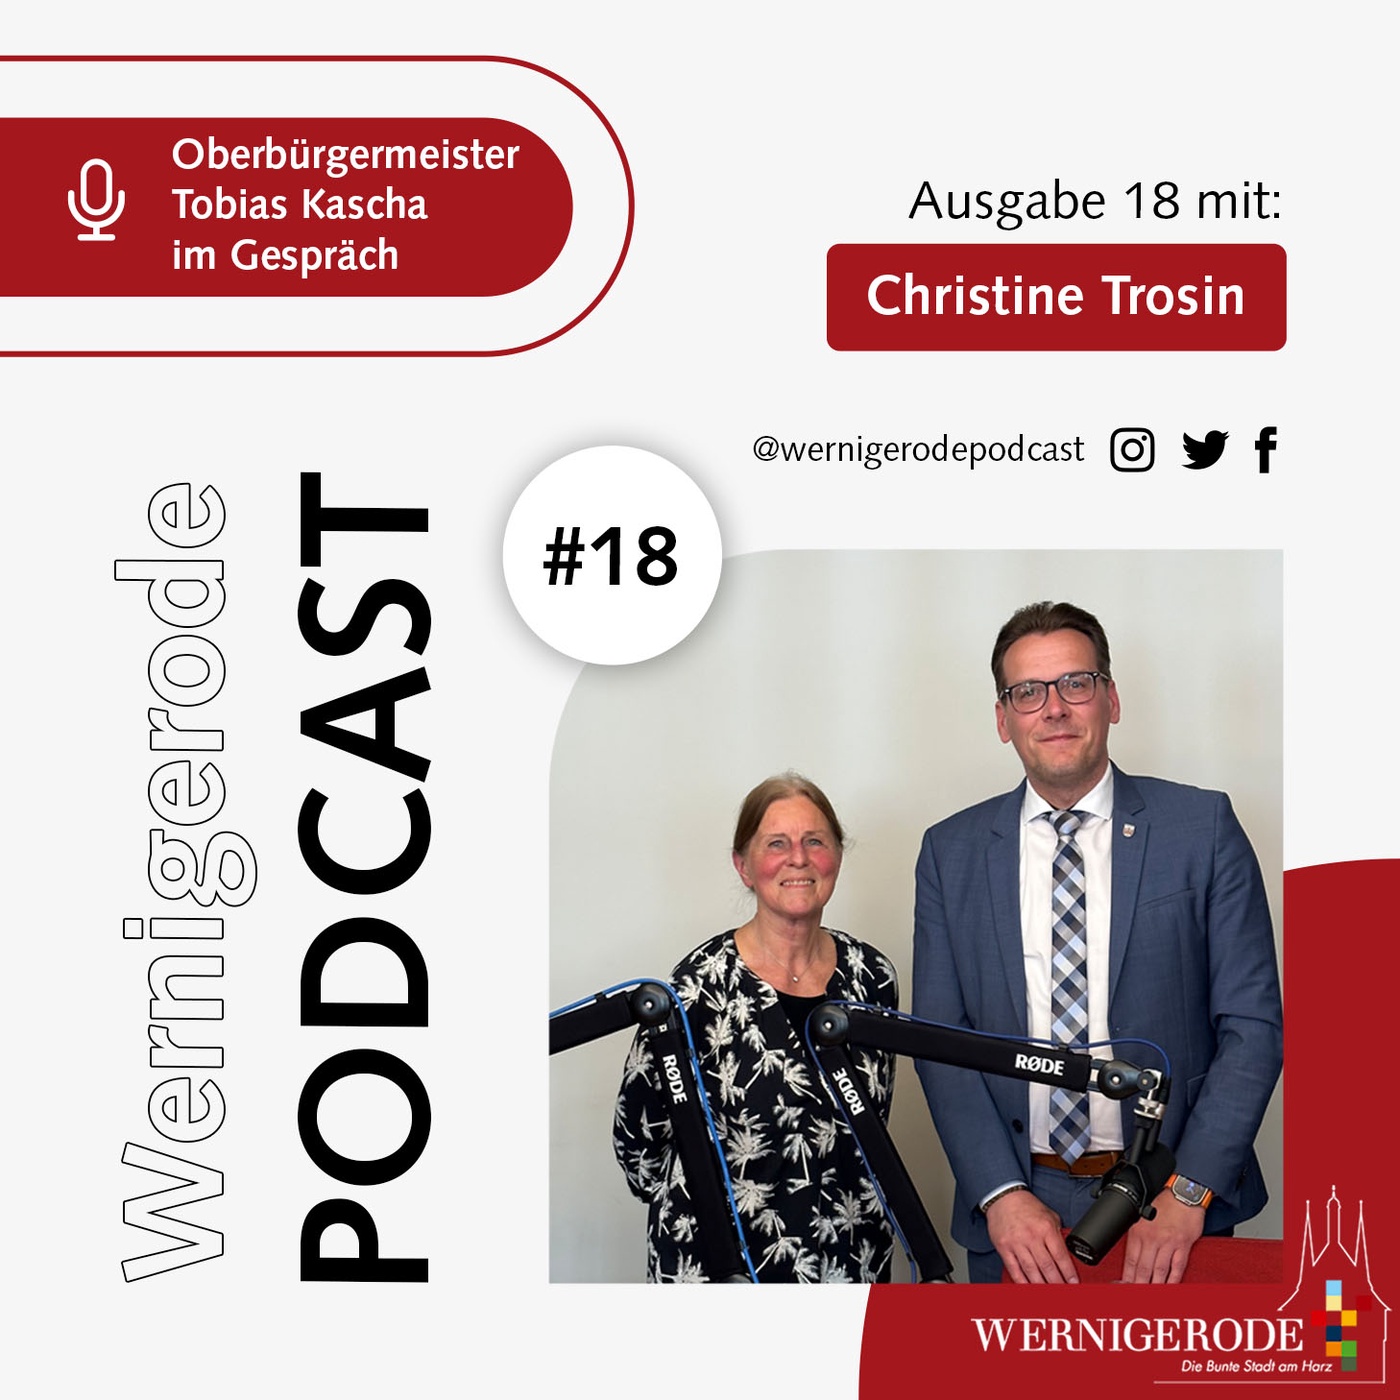 Wernigerode Podcast #18 - Oberbürgermeister Tobias Kascha im Gespräch mit Christine Trosin.